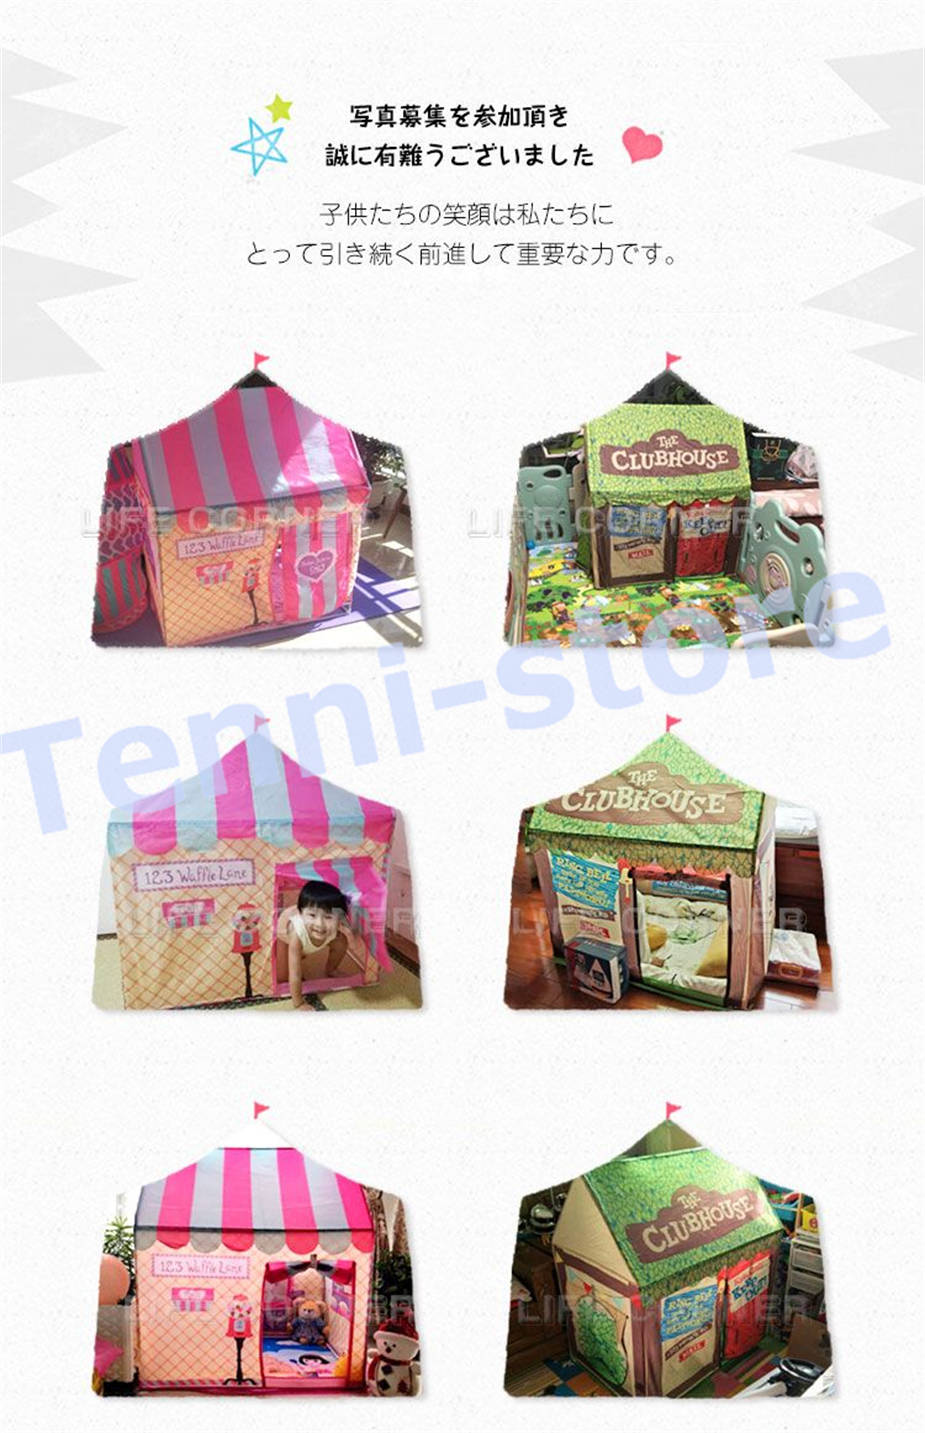 クリスマスギフト 子供プレゼント おもちゃ テント 折り畳み式 子供部屋 キャンプ キッズテント 屋...